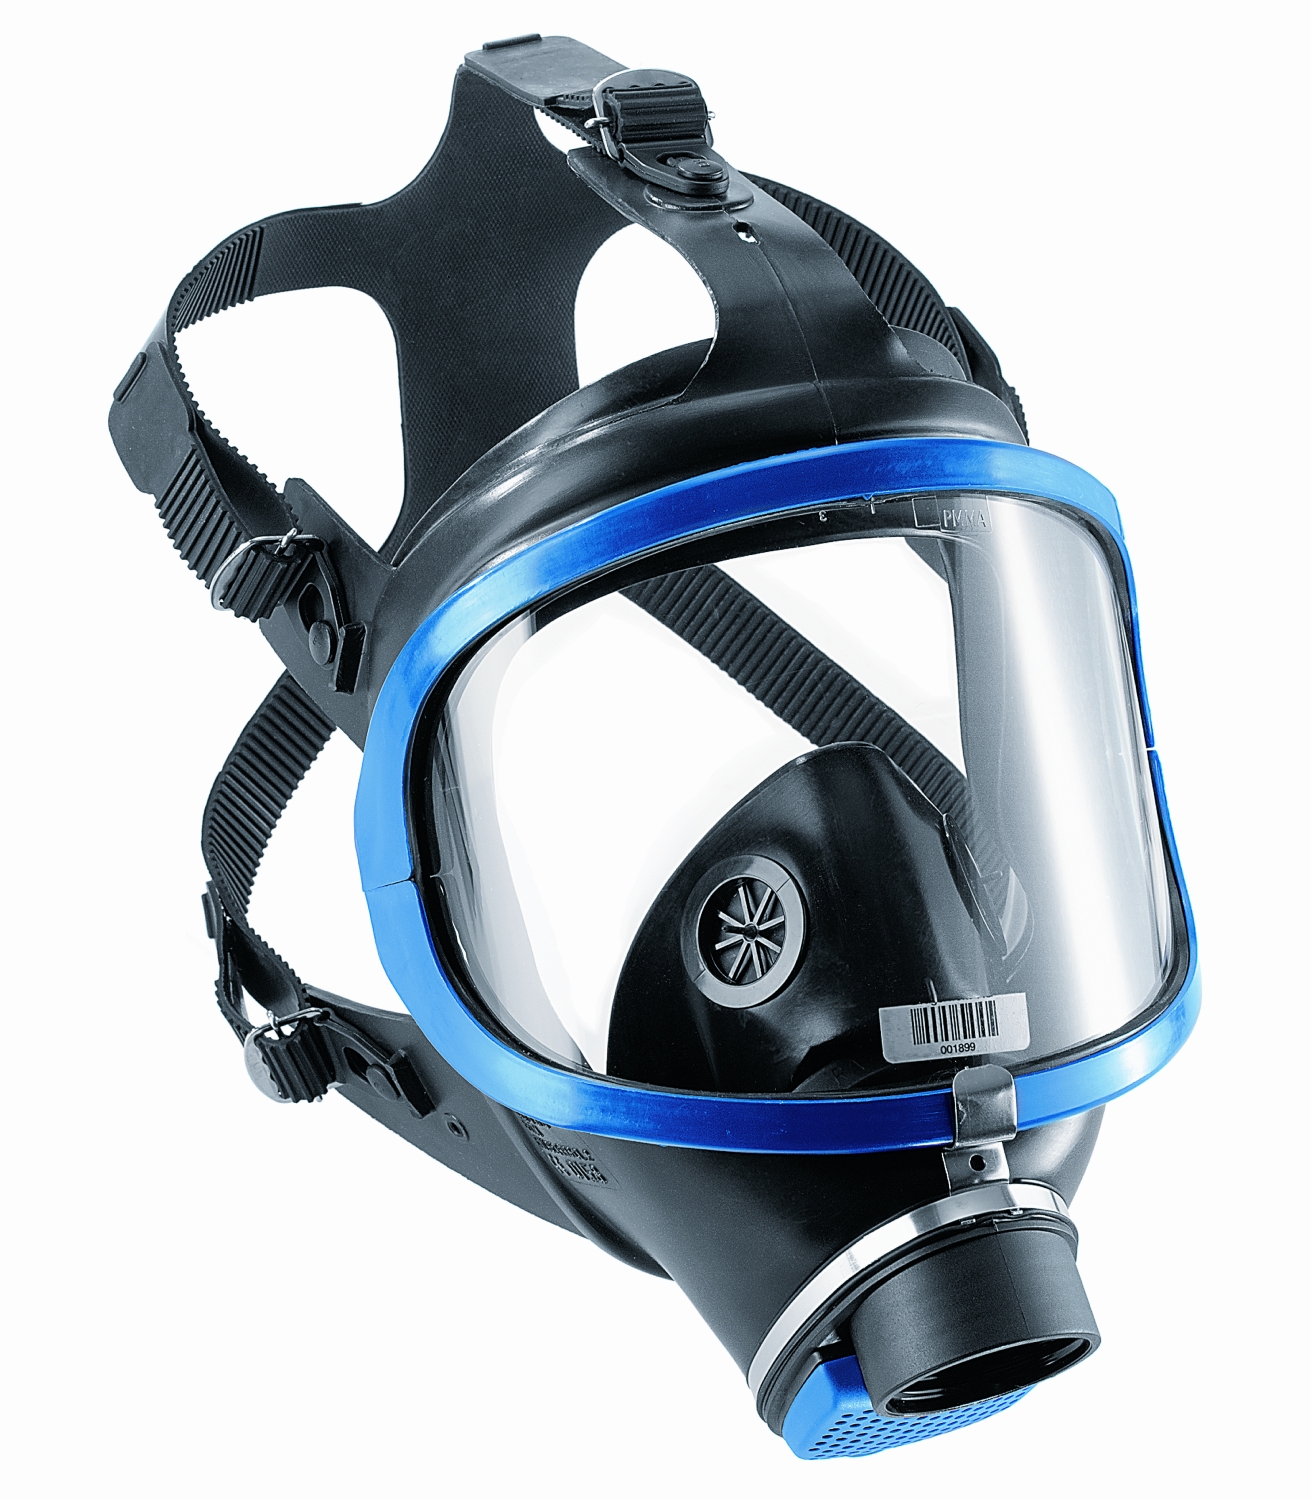 Masque complet réutilisable mono-filtre X-plore 6300 Dräger